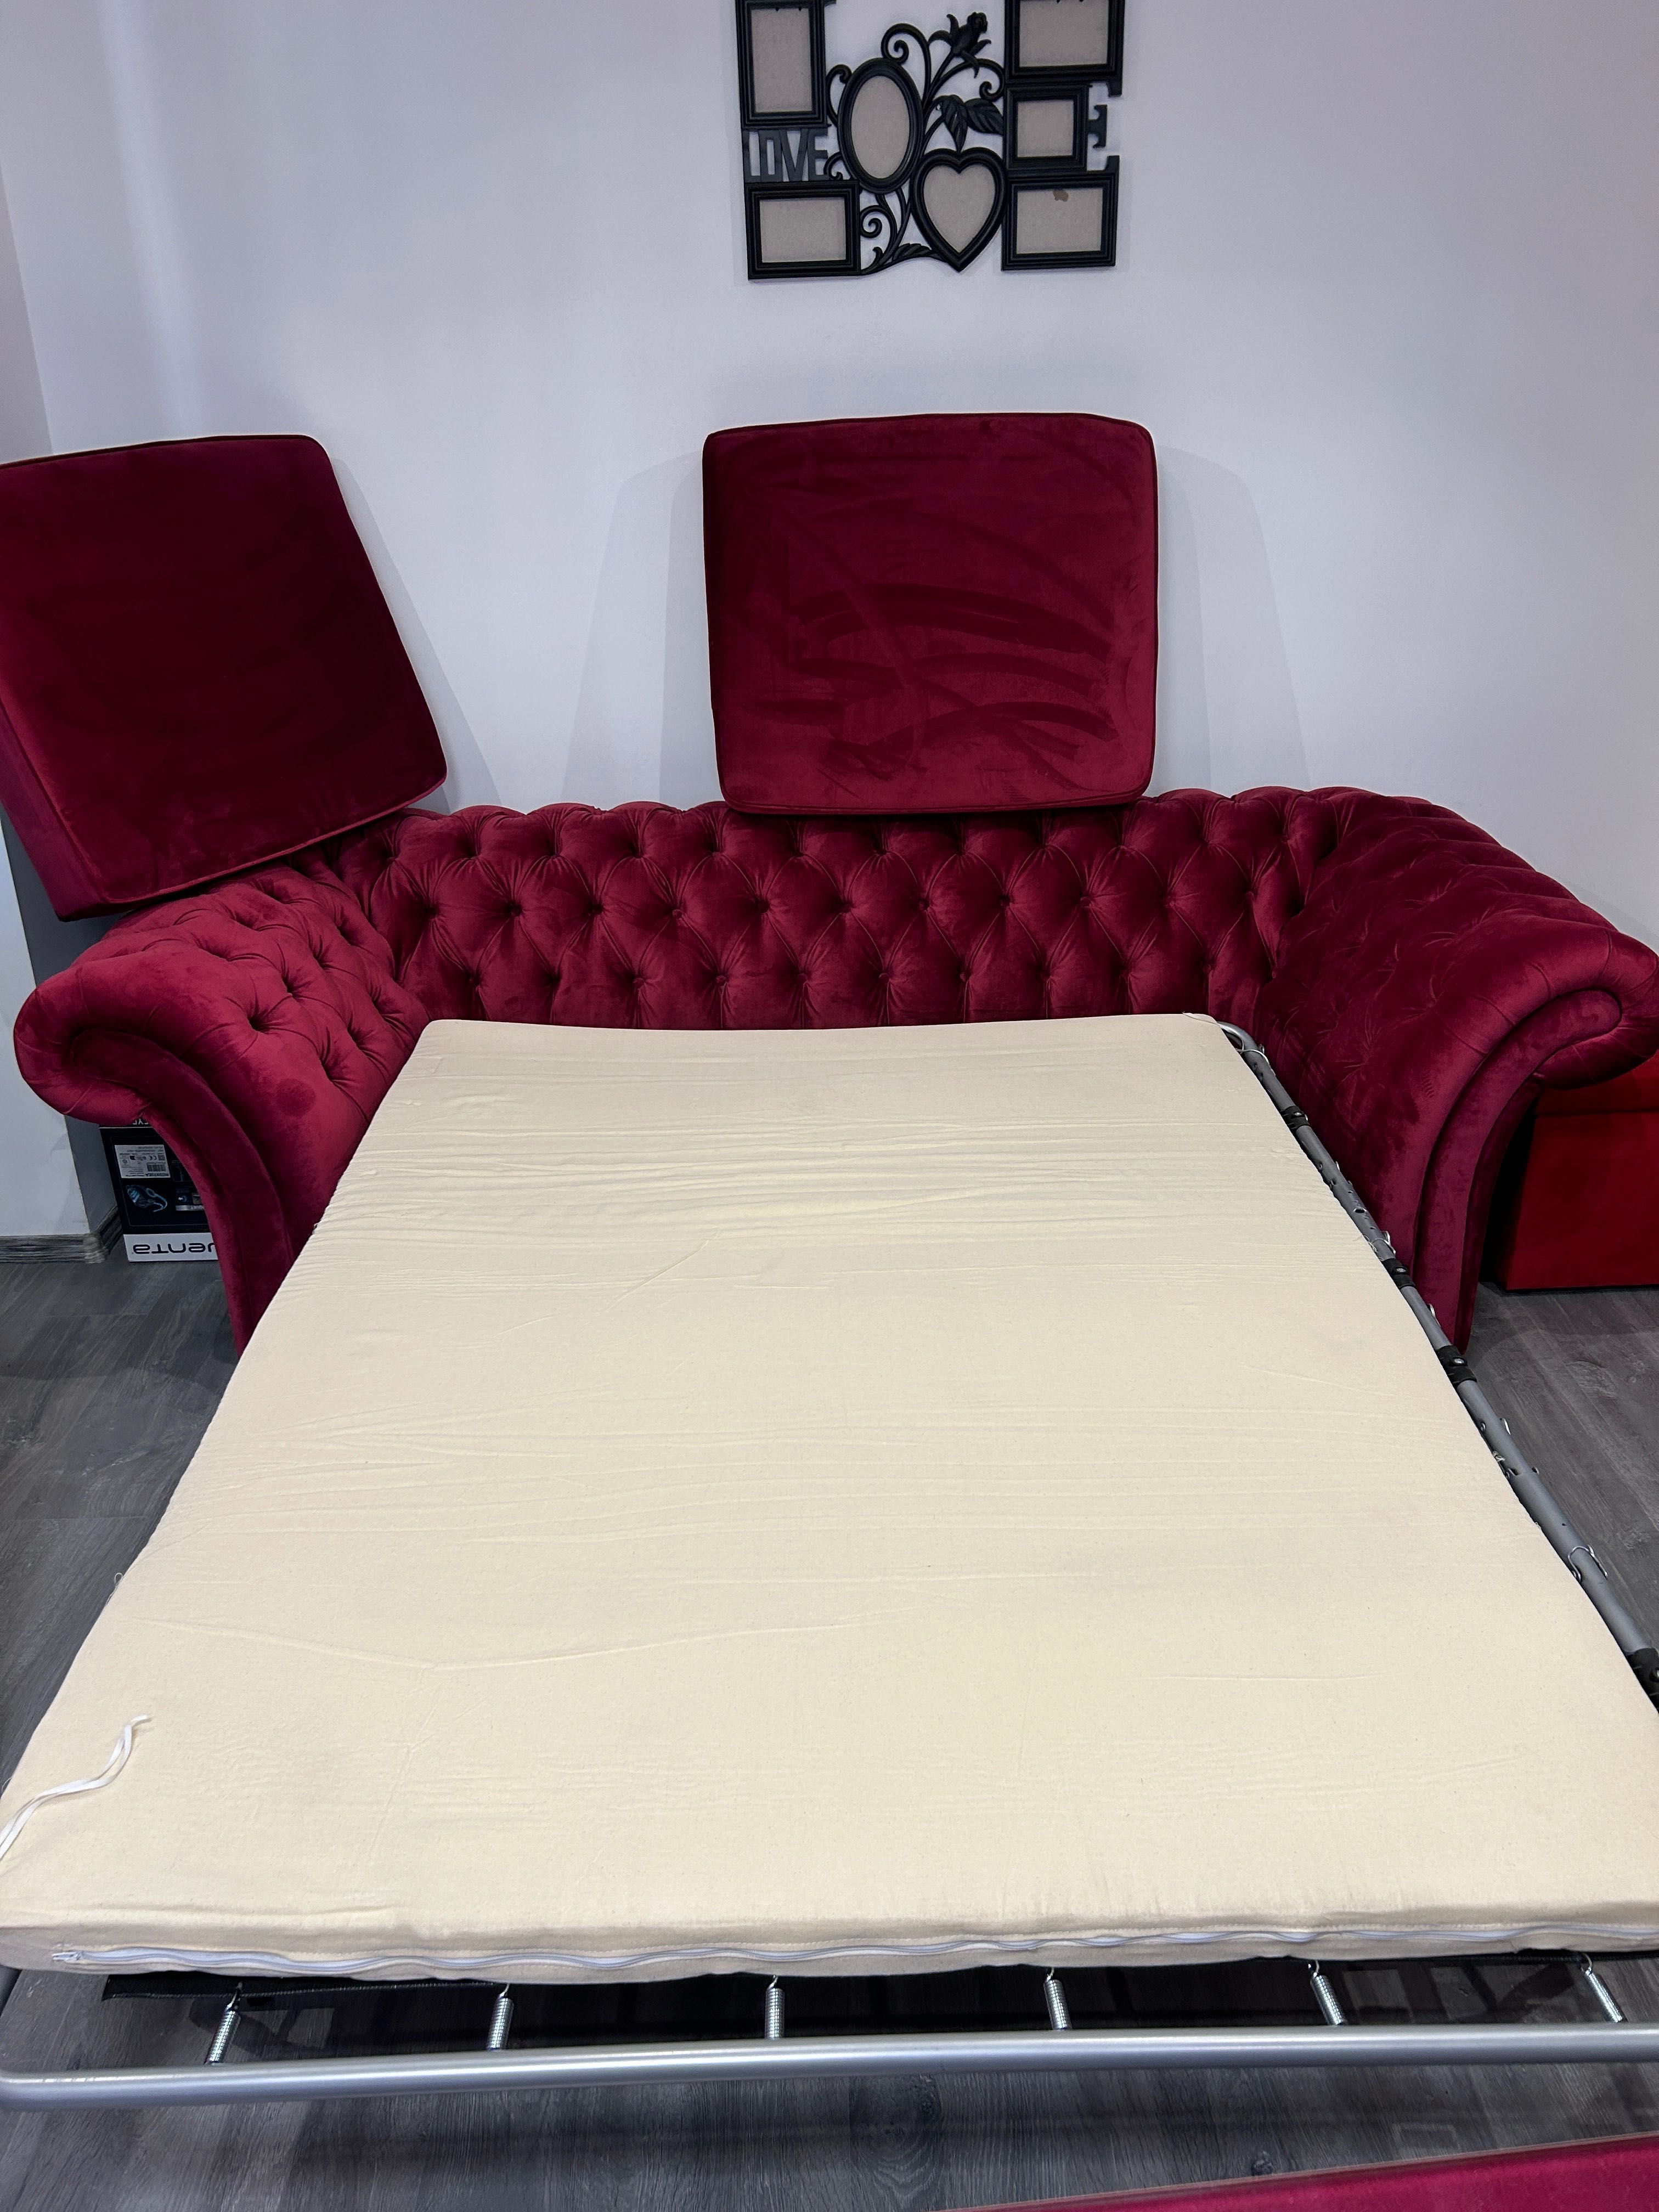 Vând canapea roșie extensibila nouă + masă extensibila și 4 scaune.